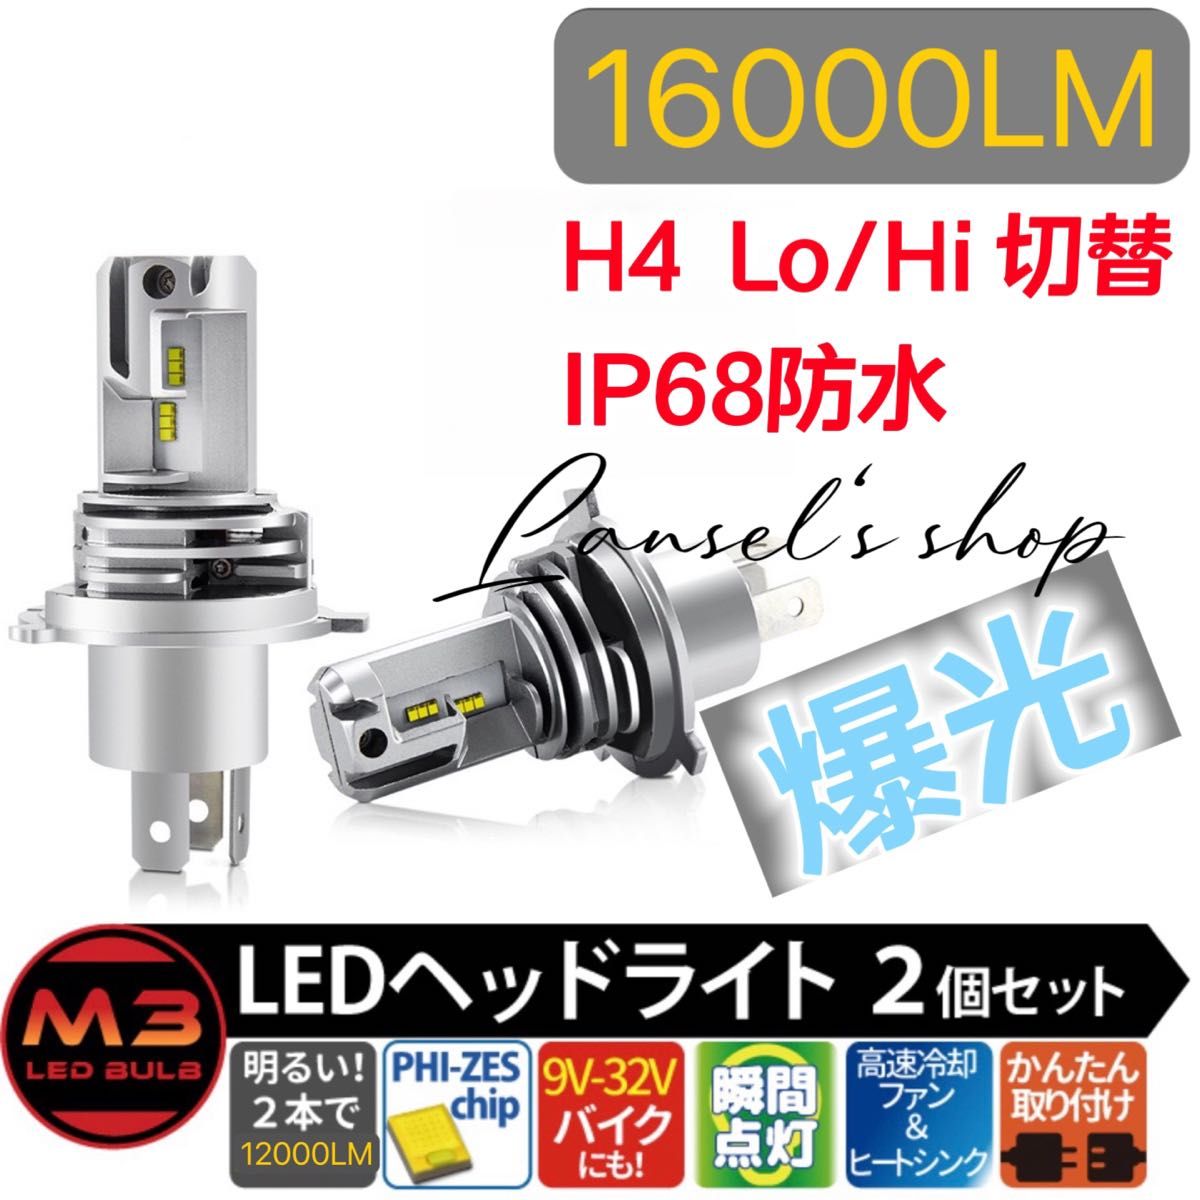 H4 led ヘッドライト Hi/Lo 16000LM 54W 12V/24V バイク用 車用 ホワイト LEDバルブ #u